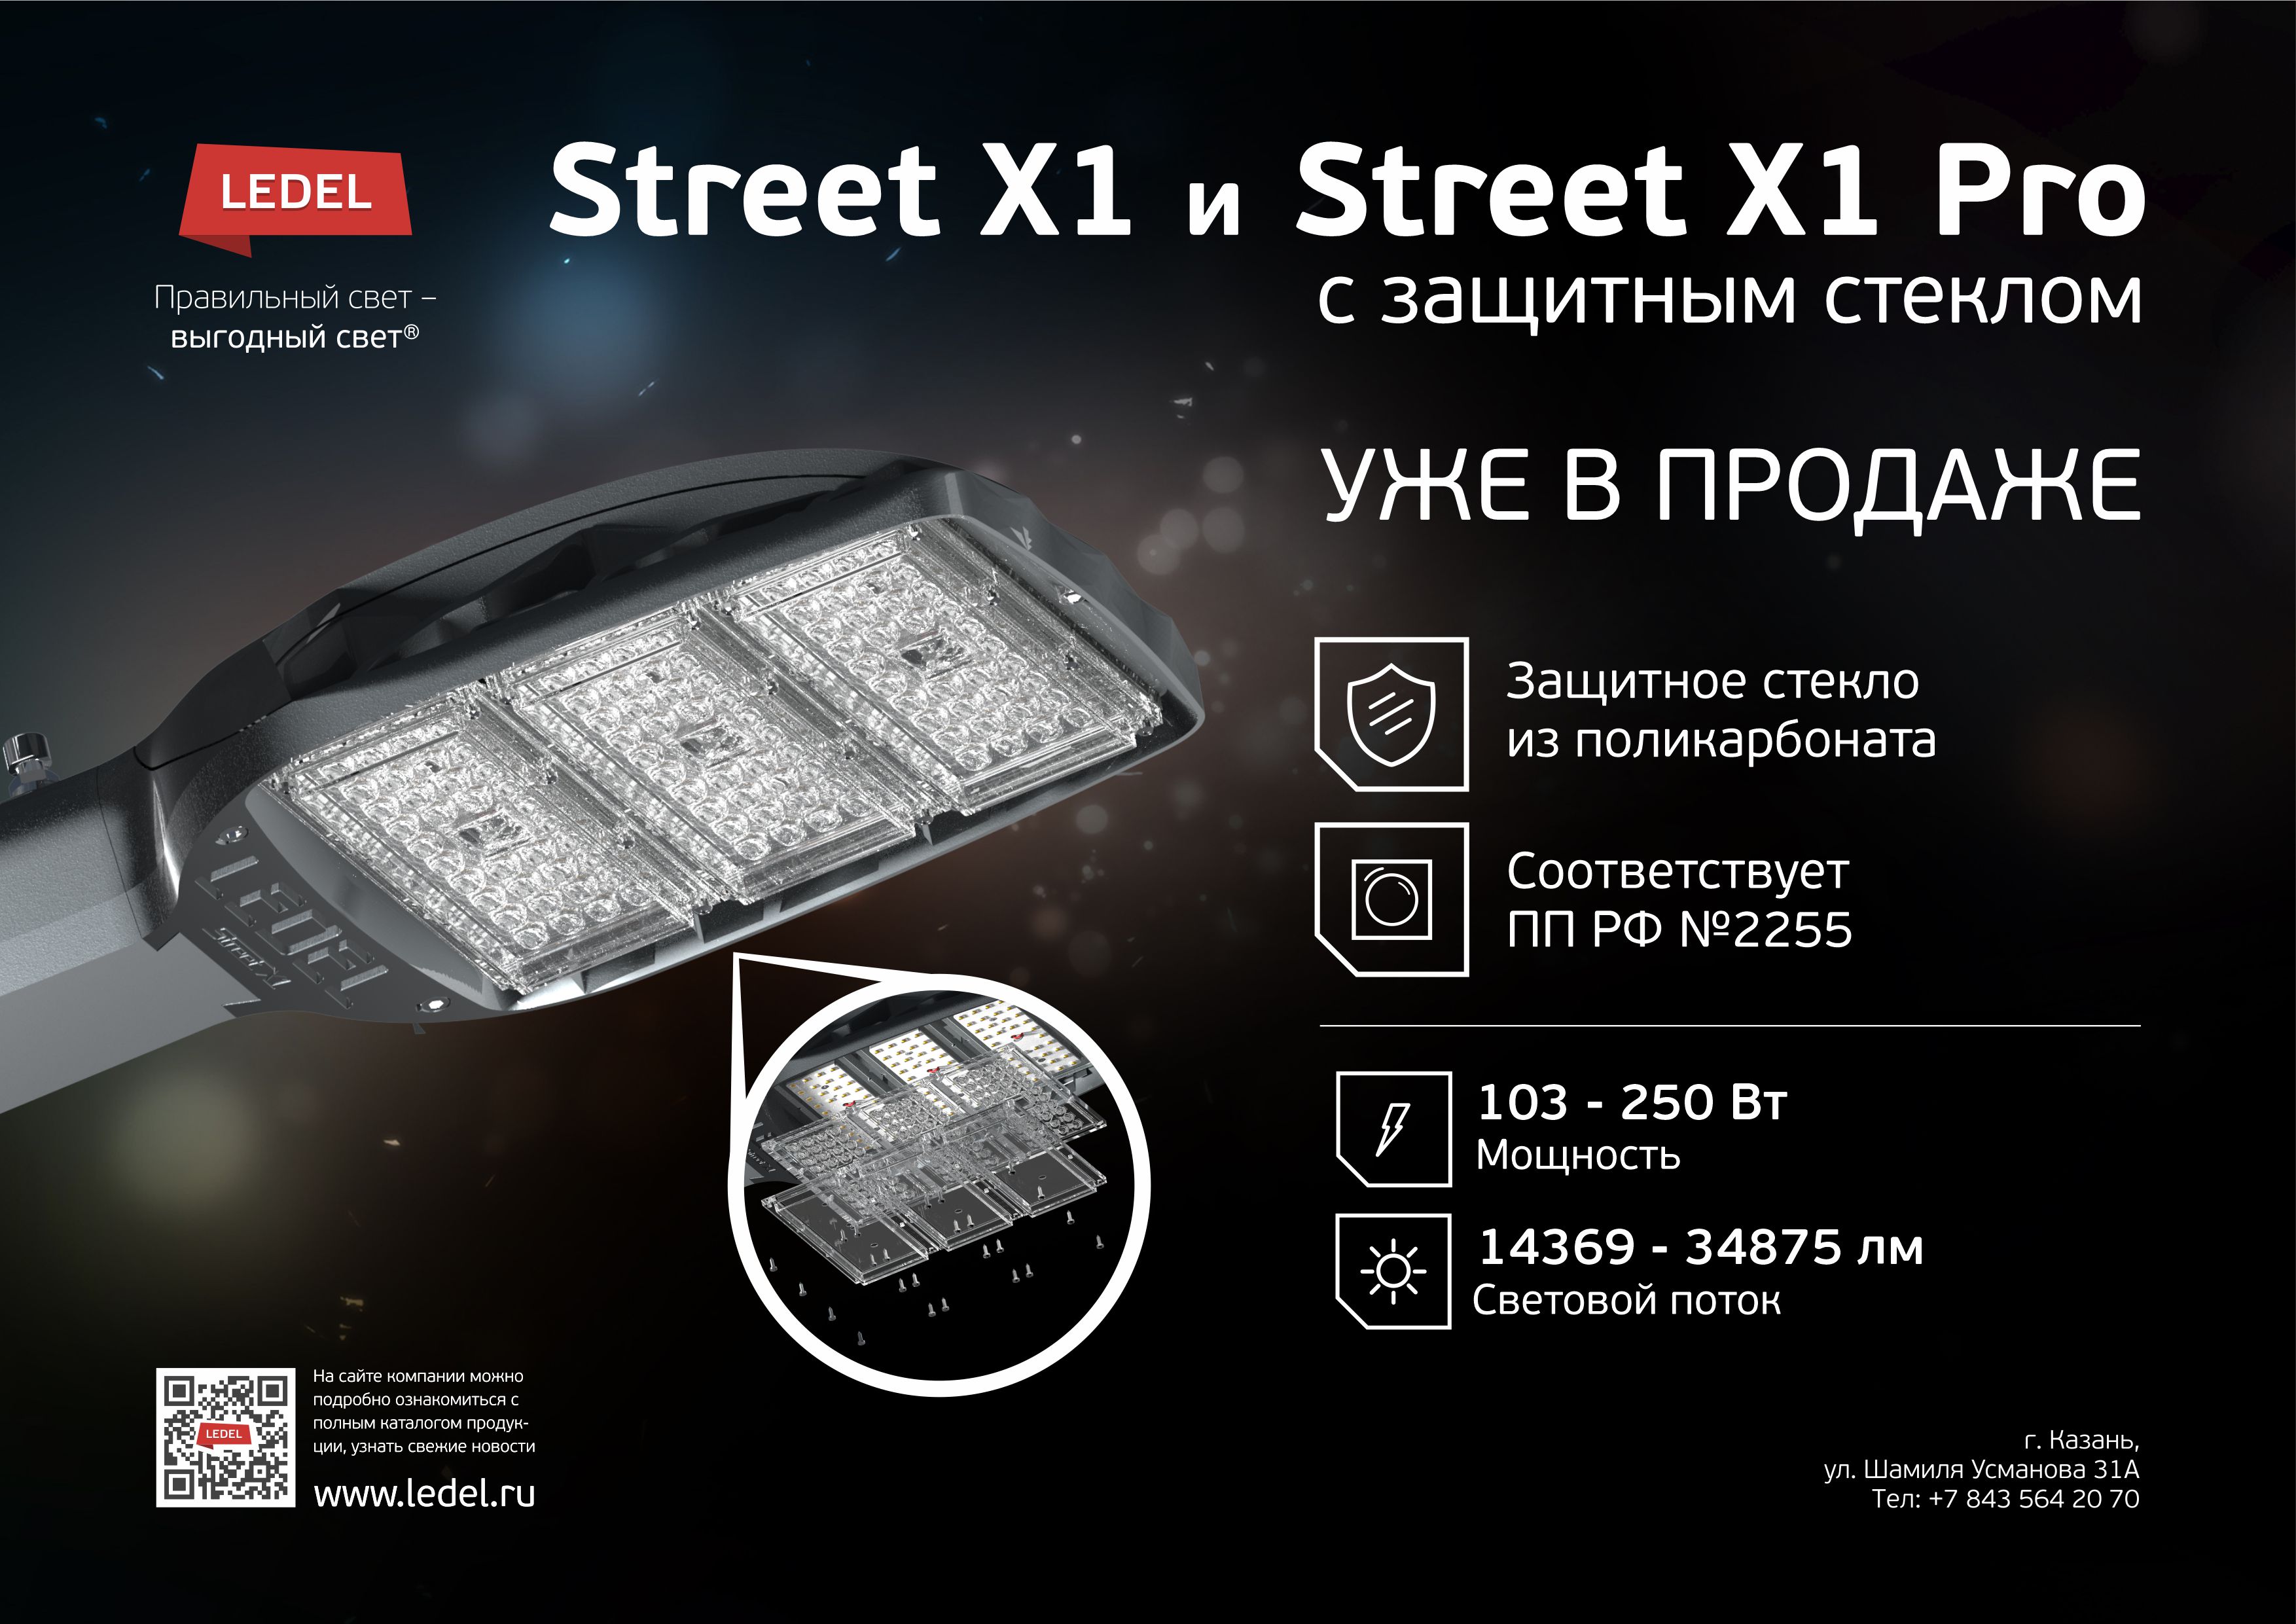 Street X1 c защитным стеклом.jpg